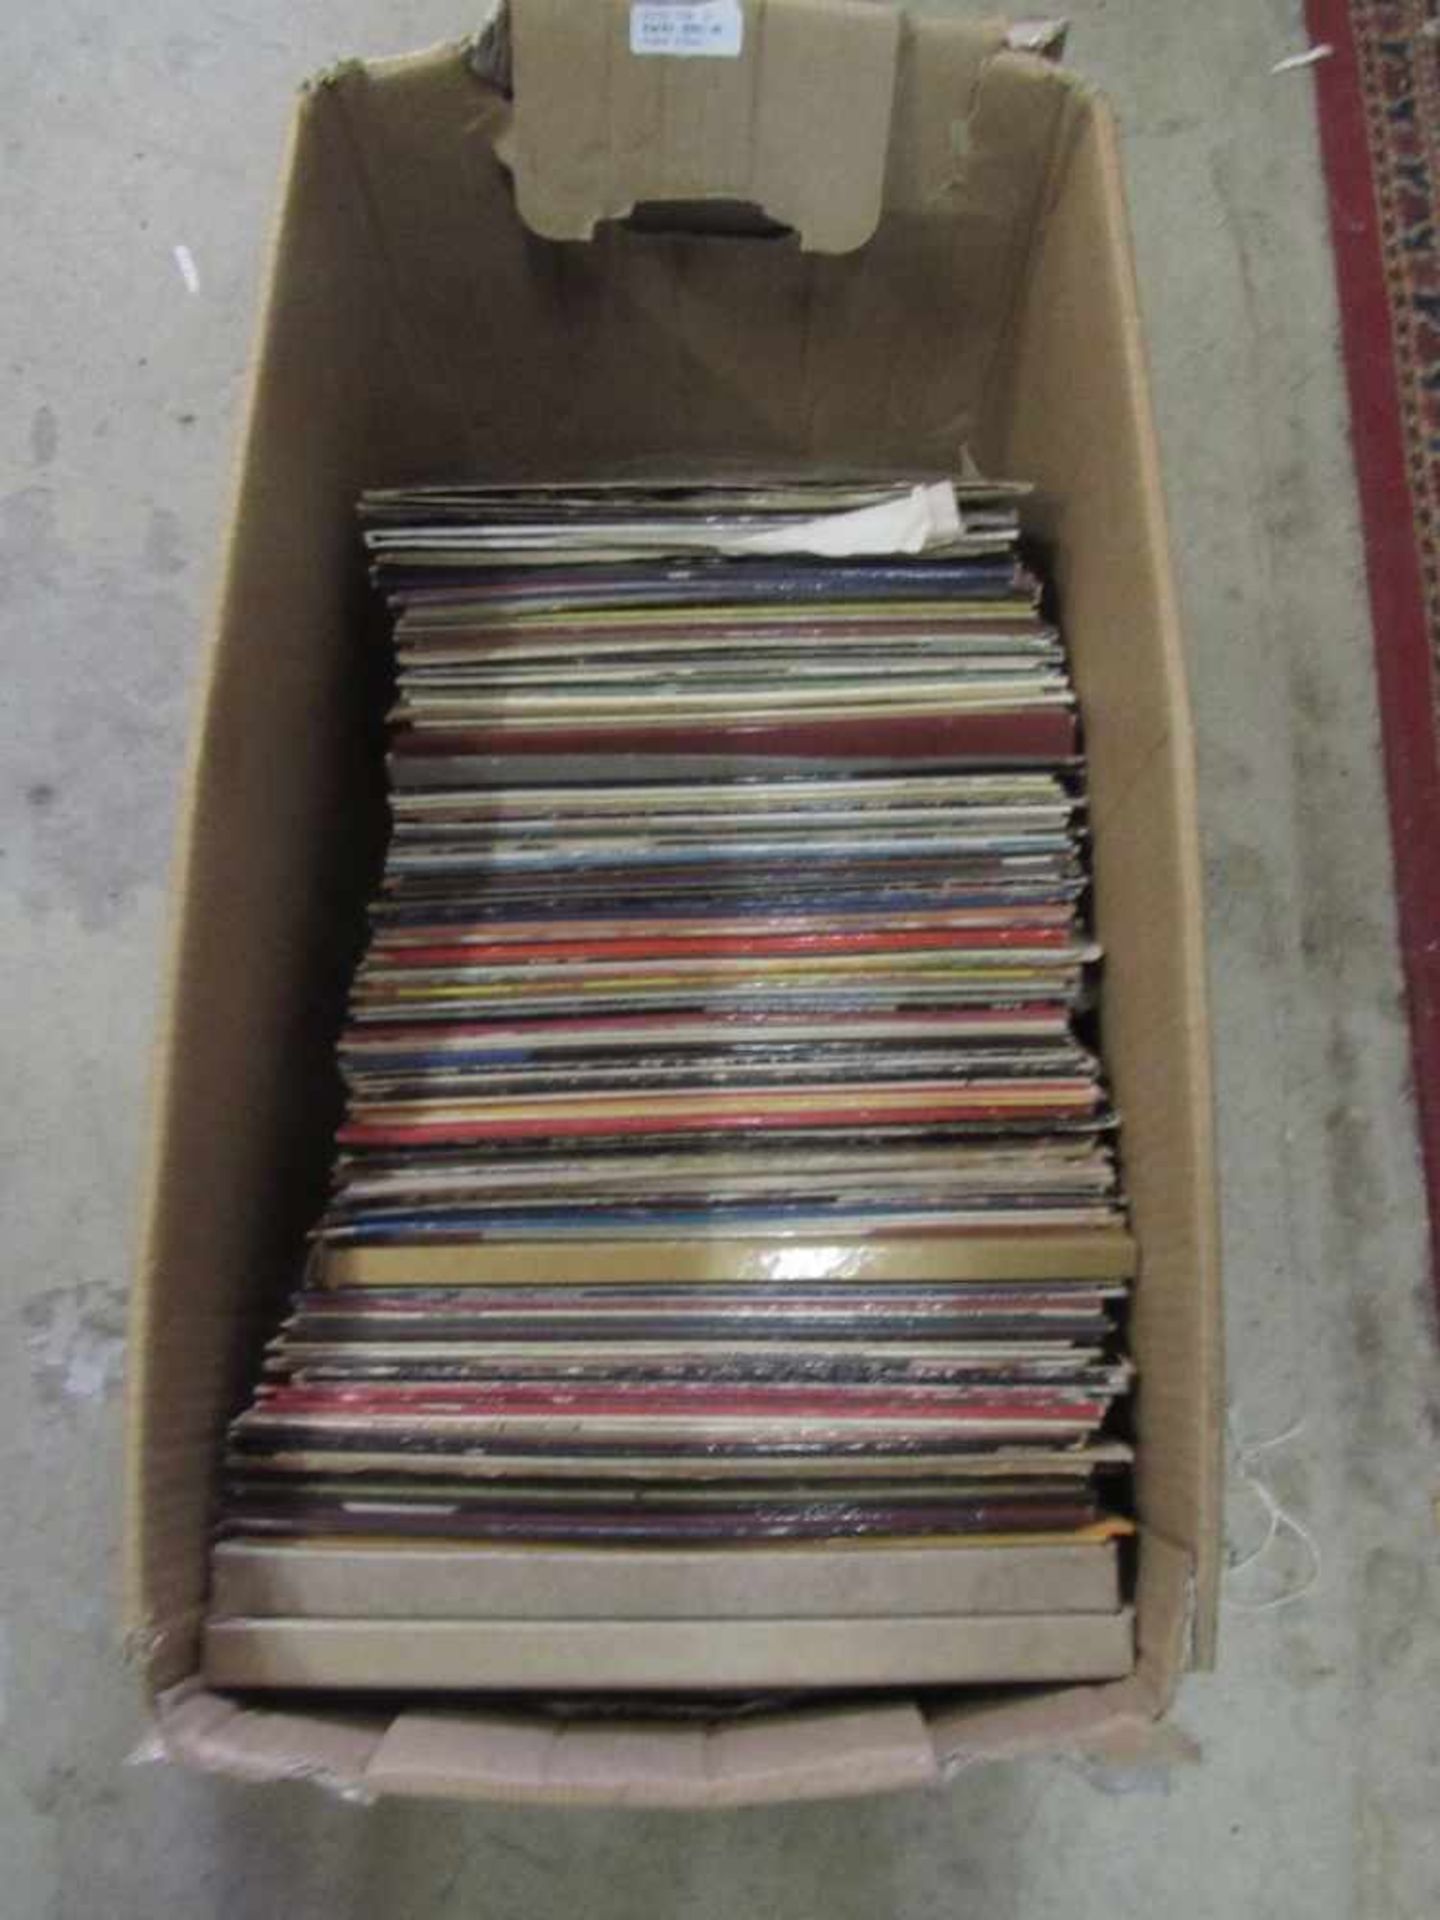 Großes Konvolut Schallplatten unsortiert und ungeprüft Umzugskarton prall gefüllt